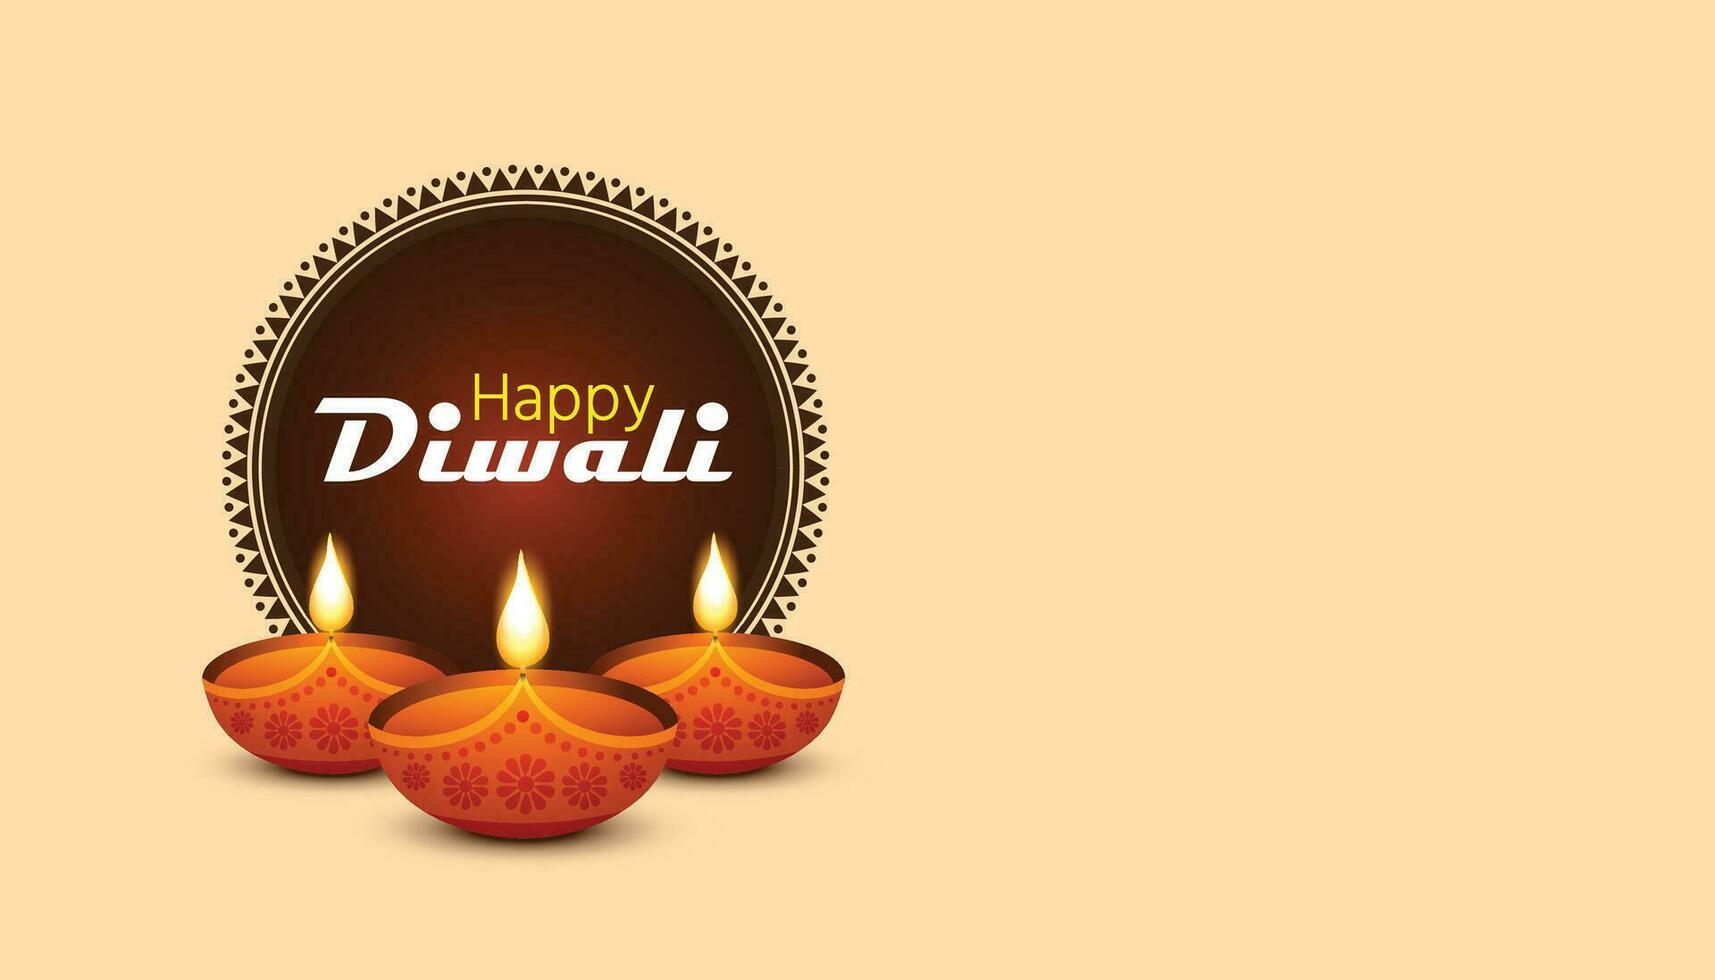 contento Diwali con Diwali carta, Diwali celebrazione inviare, vettore illustrazione design.